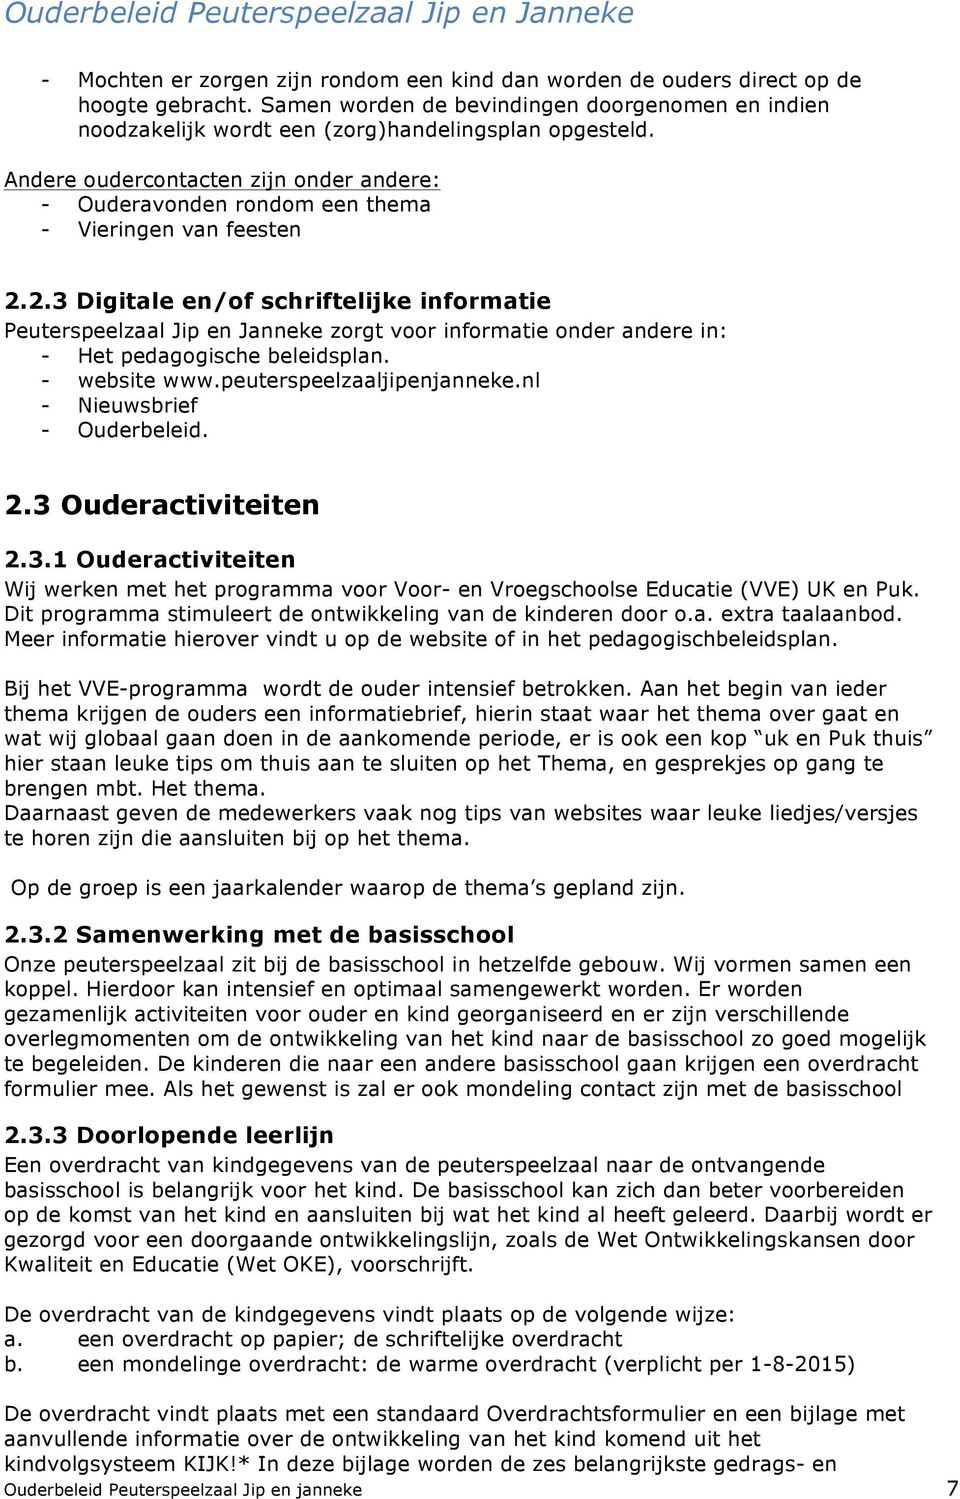 2.3 Digitale en/of schriftelijke informatie Peuterspeelzaal Jip en Janneke zorgt voor informatie onder andere in: - Het pedagogische beleidsplan. - website www.peuterspeelzaaljipenjanneke.